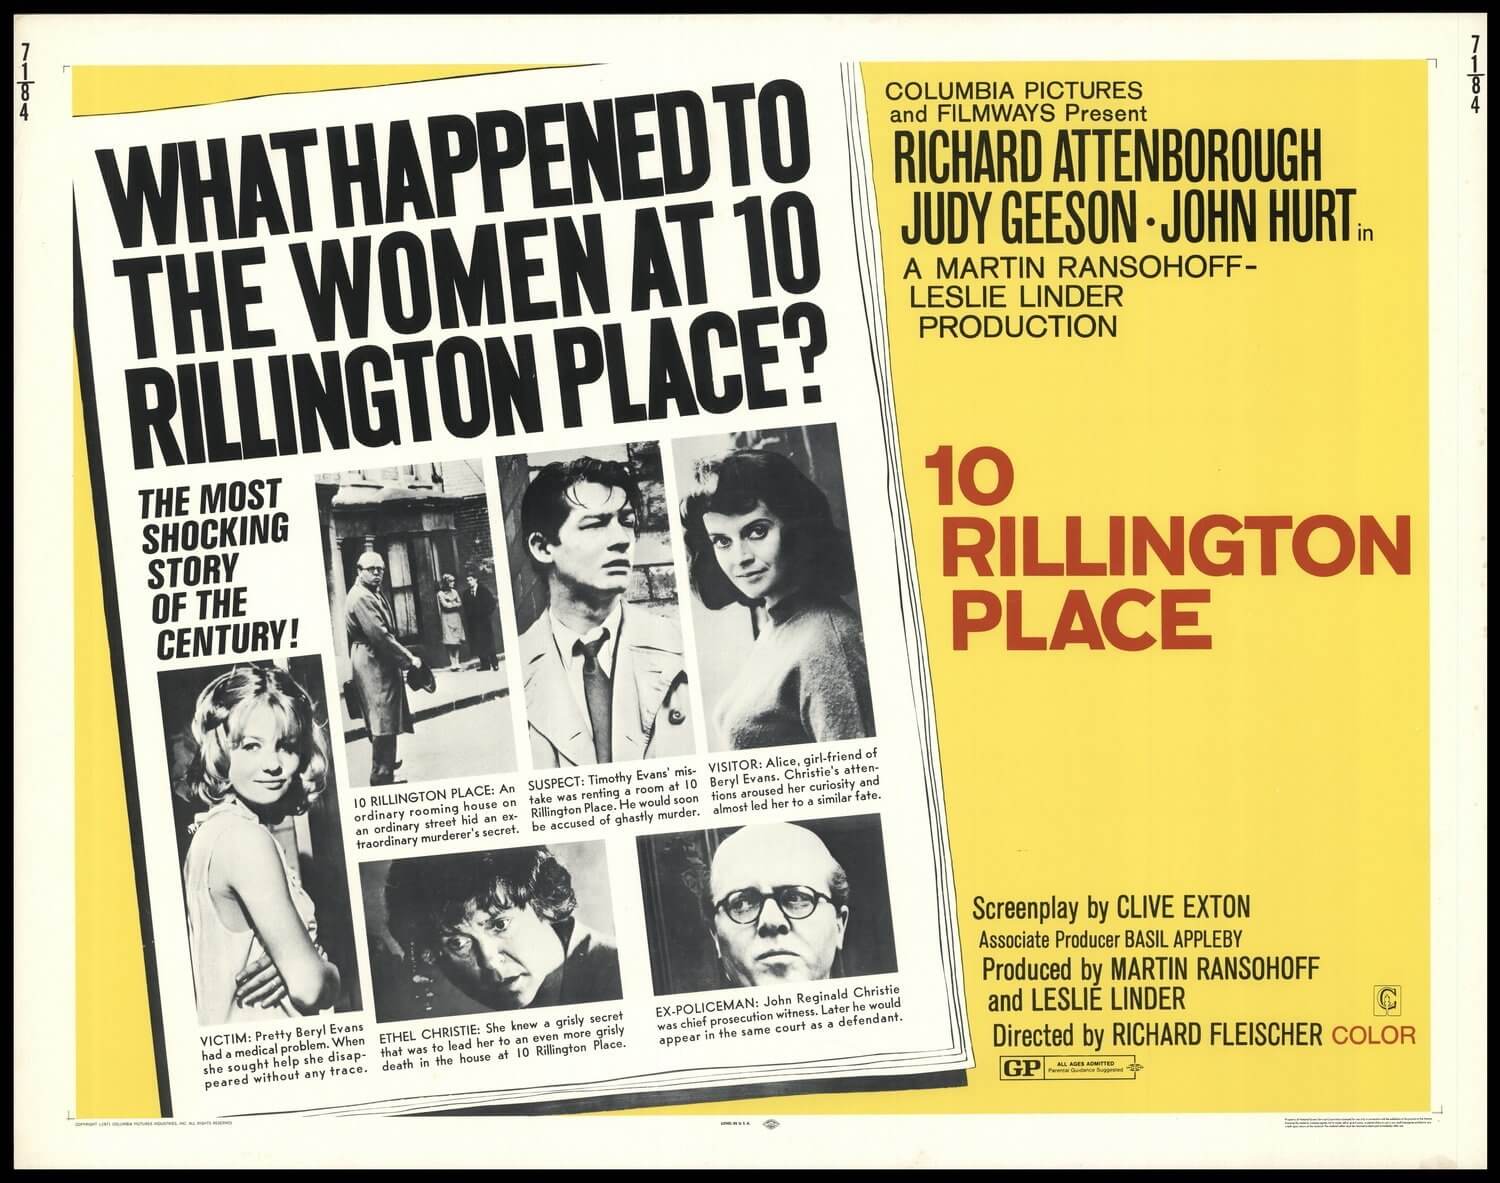 Billington Place promo